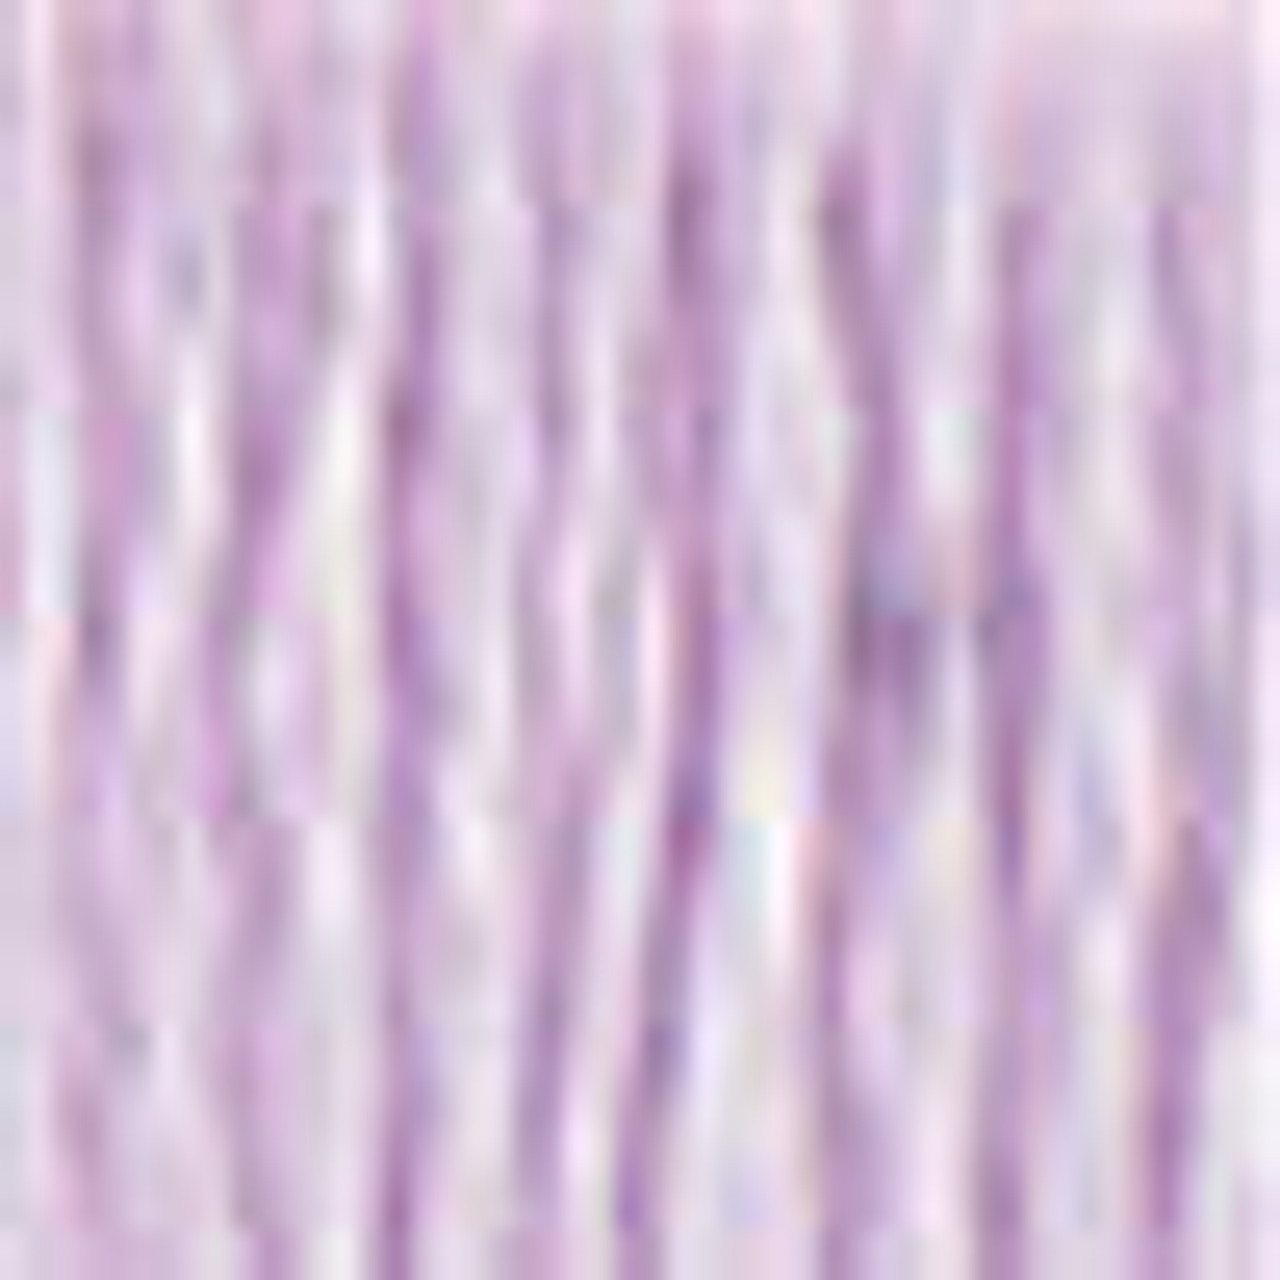 DMC # 210 Medium Lavender Floss / Thread